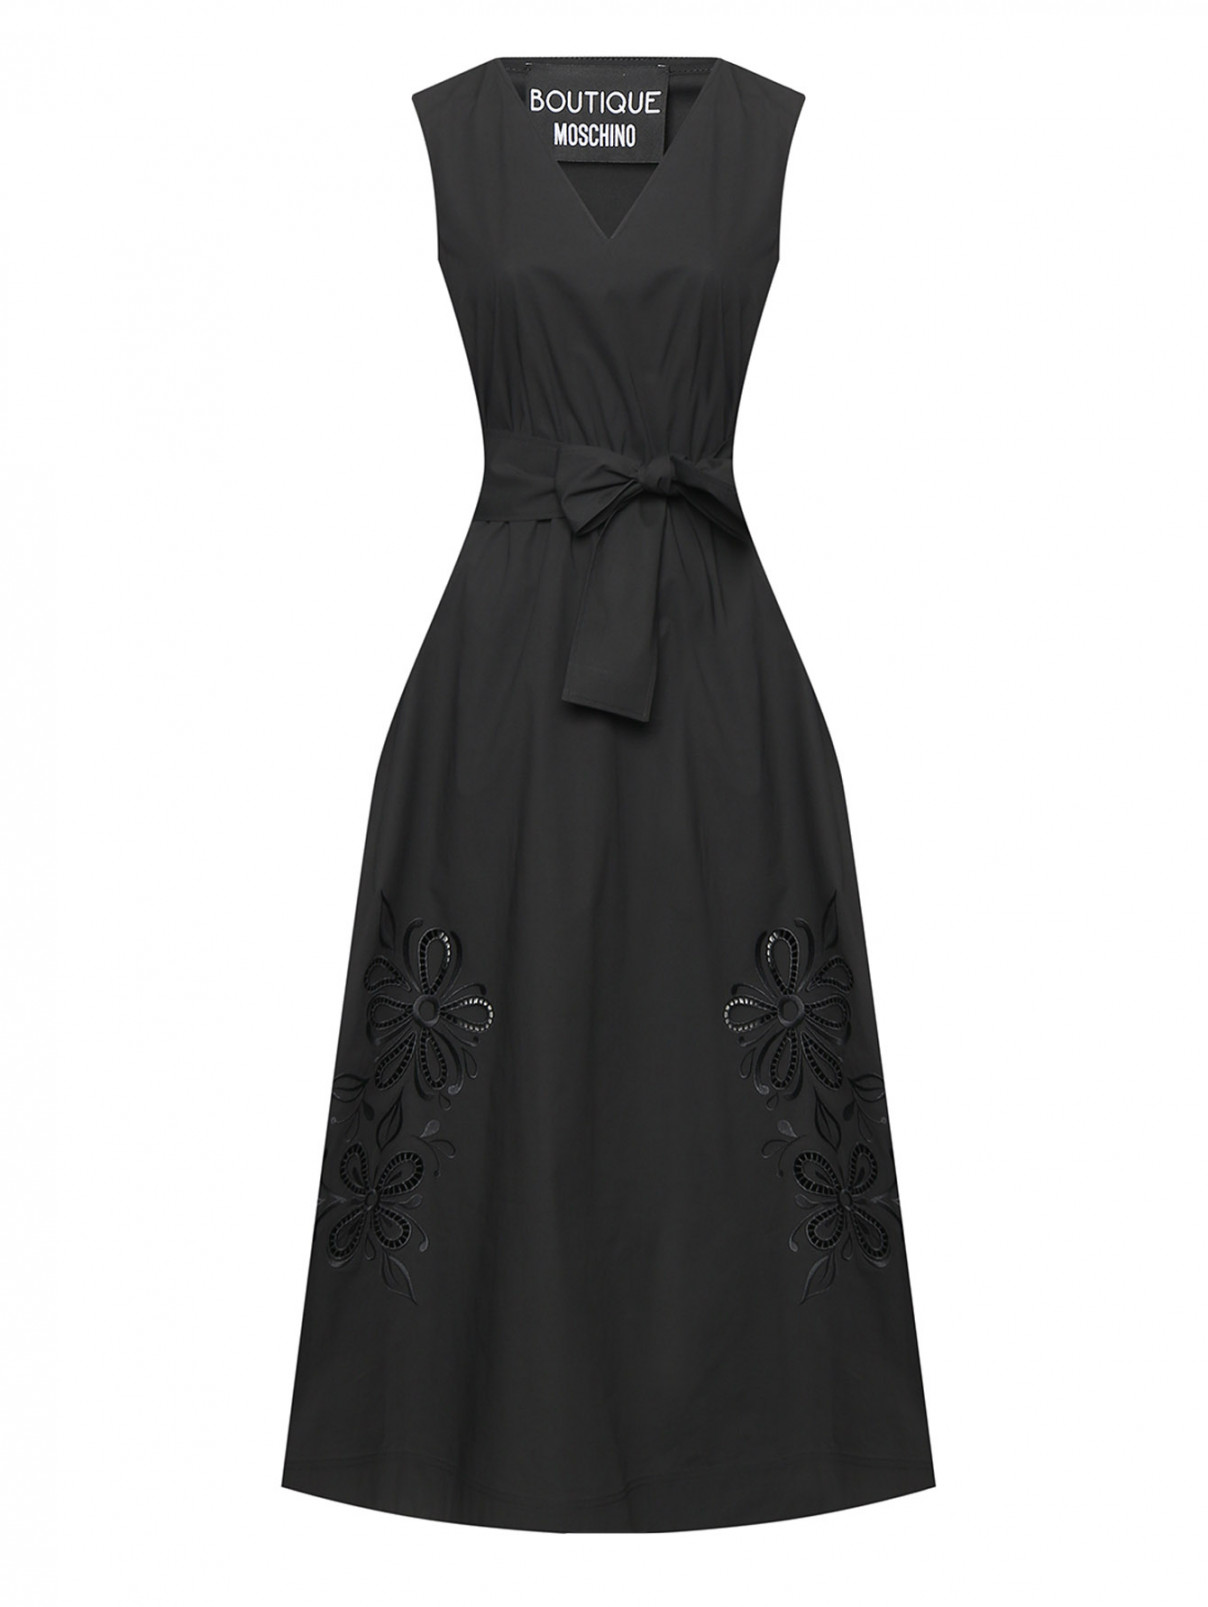 Платье из хлопка с вышивкой Moschino Boutique  –  Общий вид  – Цвет:  Черный